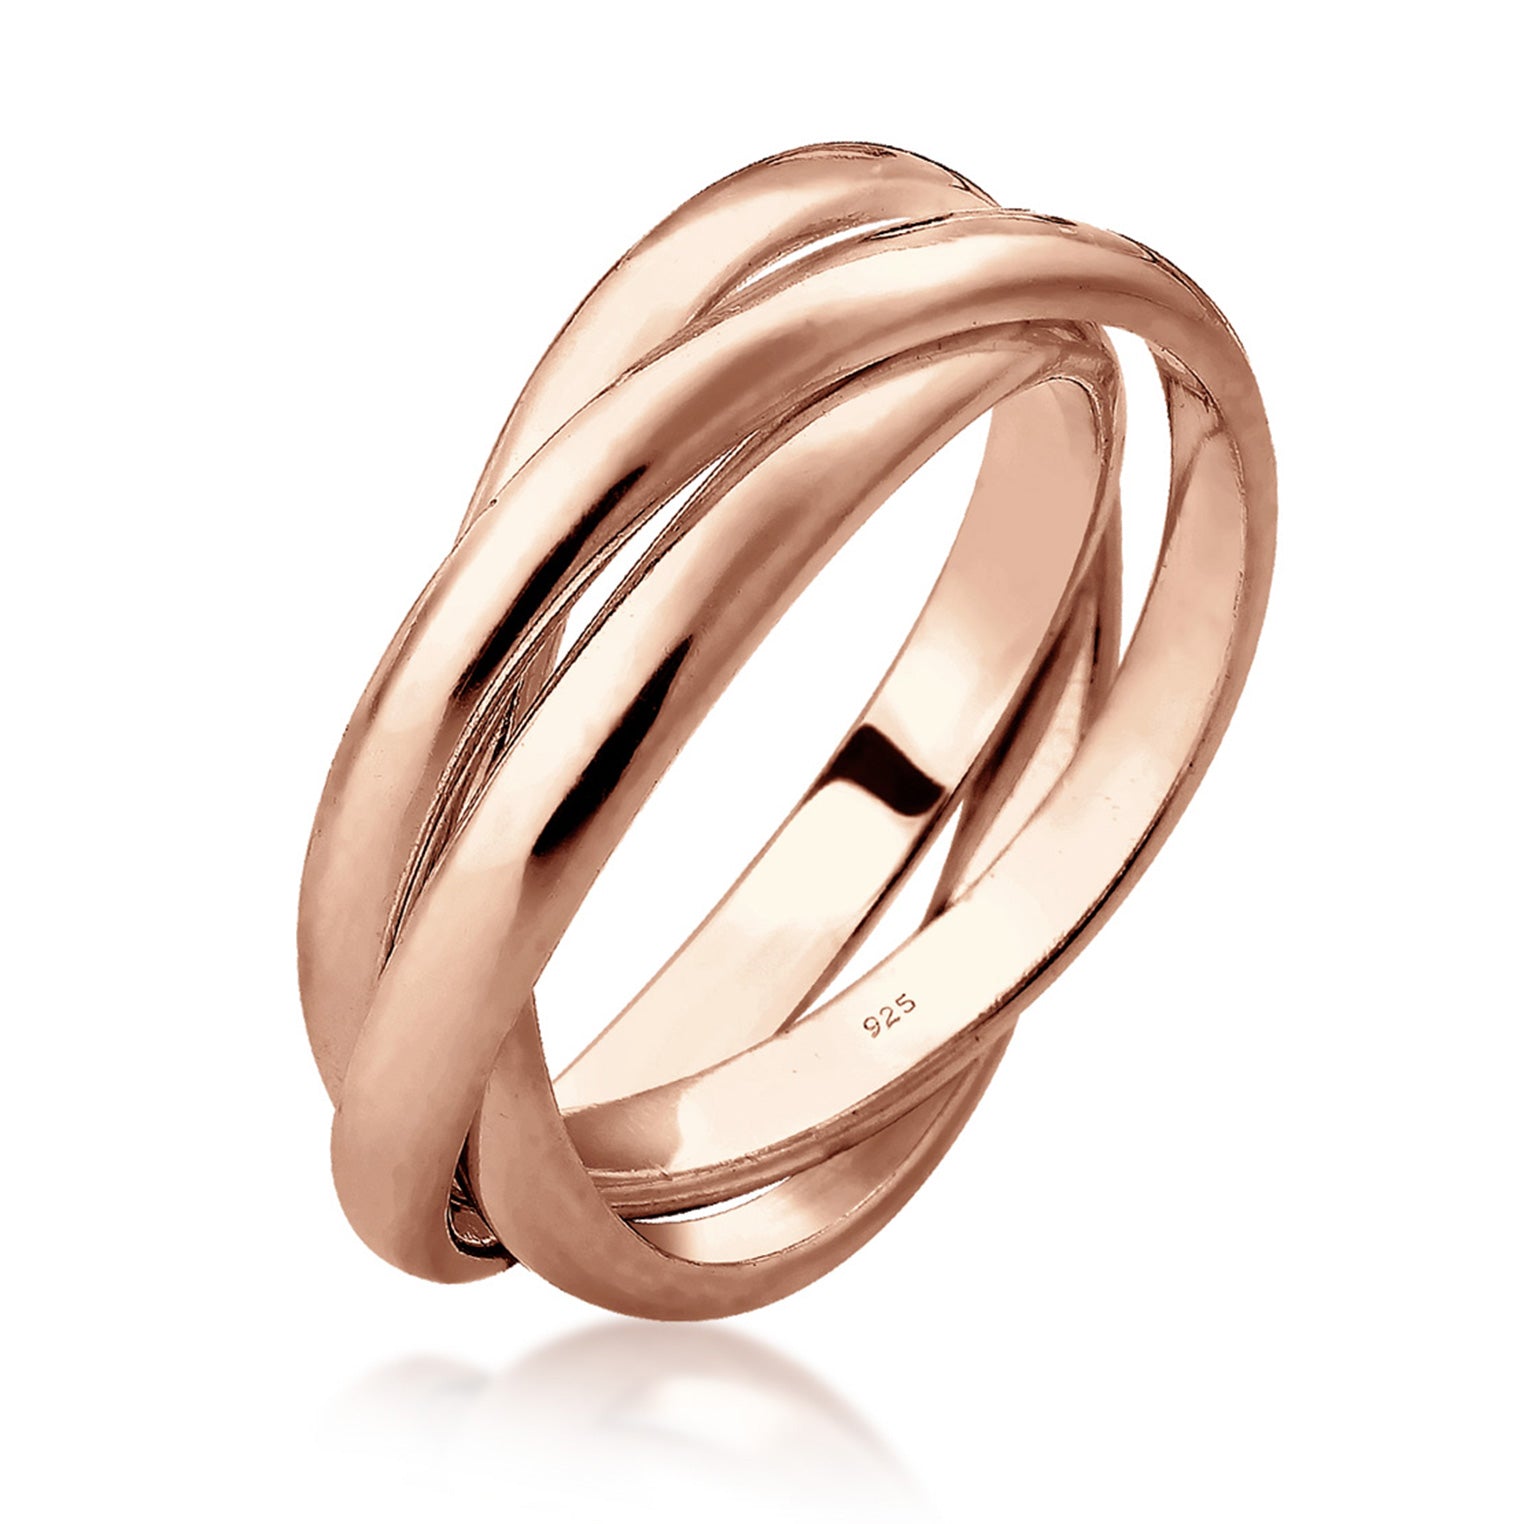 Ringe aus Silber oder Gold | bei Elli kaufen | TOP Auswahl – Elli Jewelry